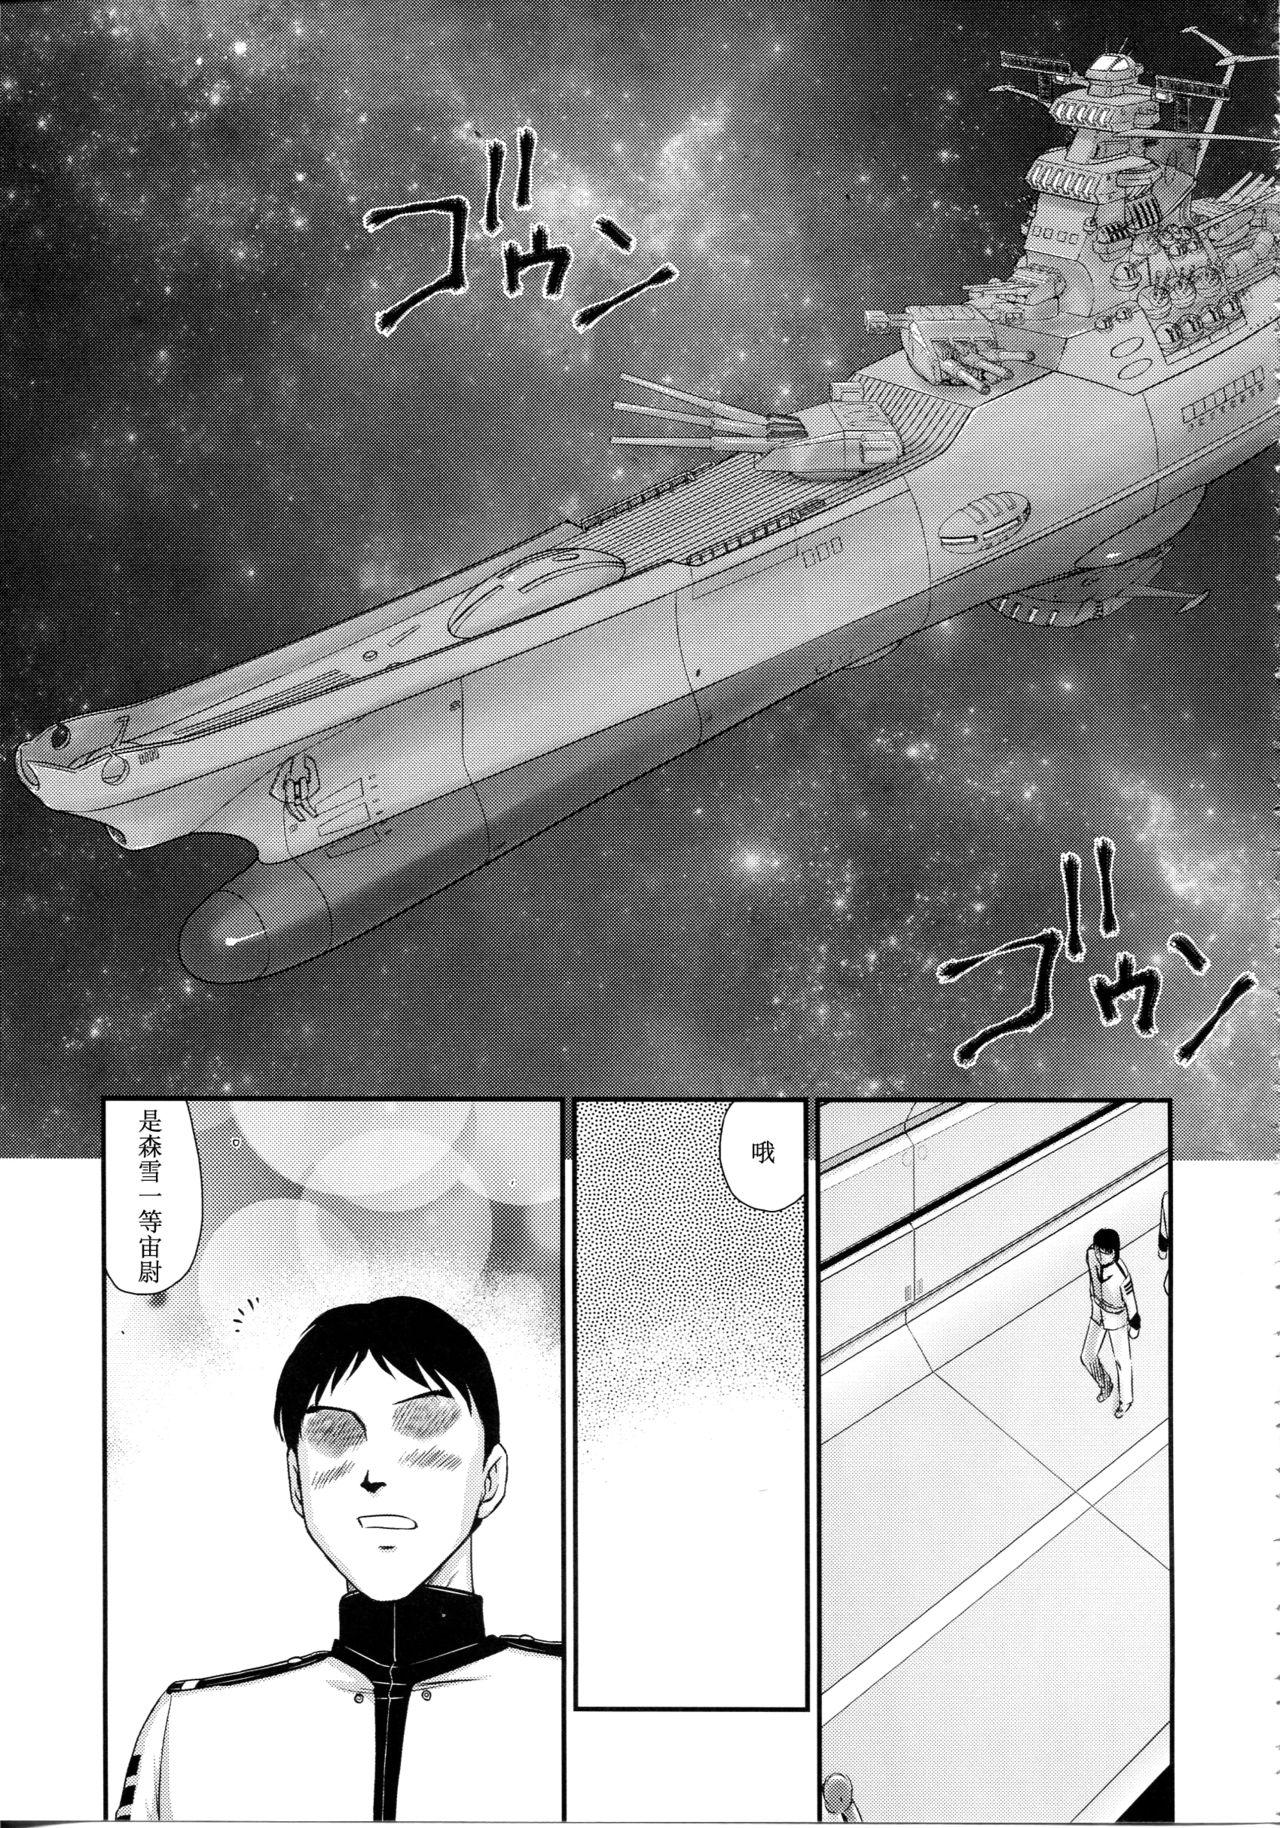 Xxx Yuki no Shizuku - Space battleship yamato 2199 Cumfacial - Page 10